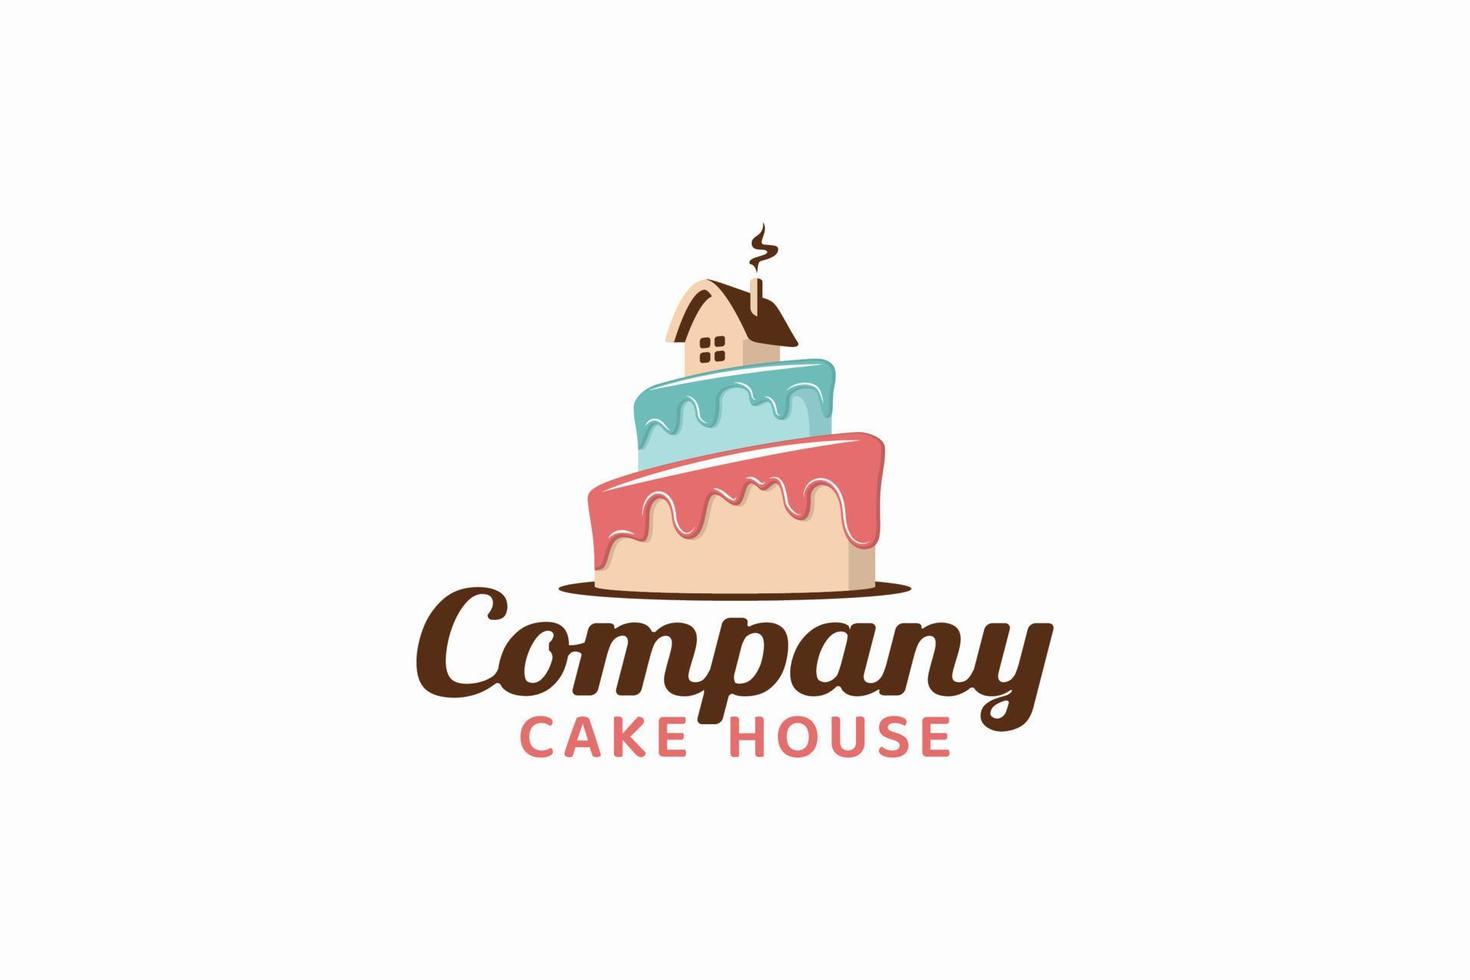 Kuchenhaus-Logo für jedes Unternehmen, insbesondere für Bäckereien, Konditoreien, Geschäfte, Cafés, Restaurants usw. vektor